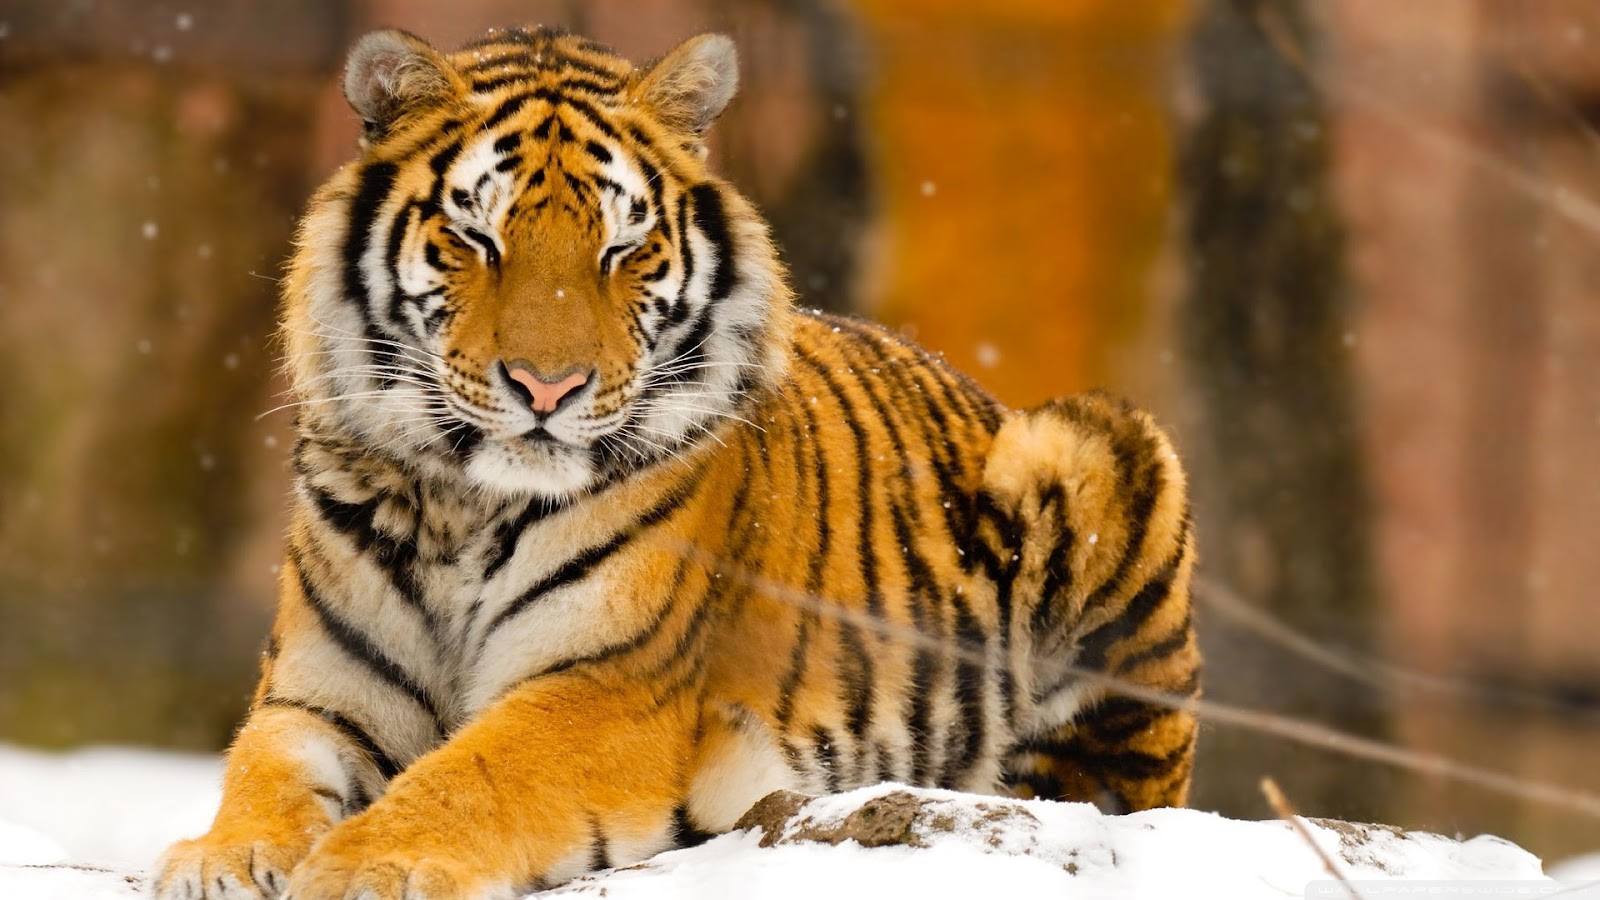 wildtier tapete hd,tiger,tierwelt,landtier,bengalischer tiger,sibirischer tiger